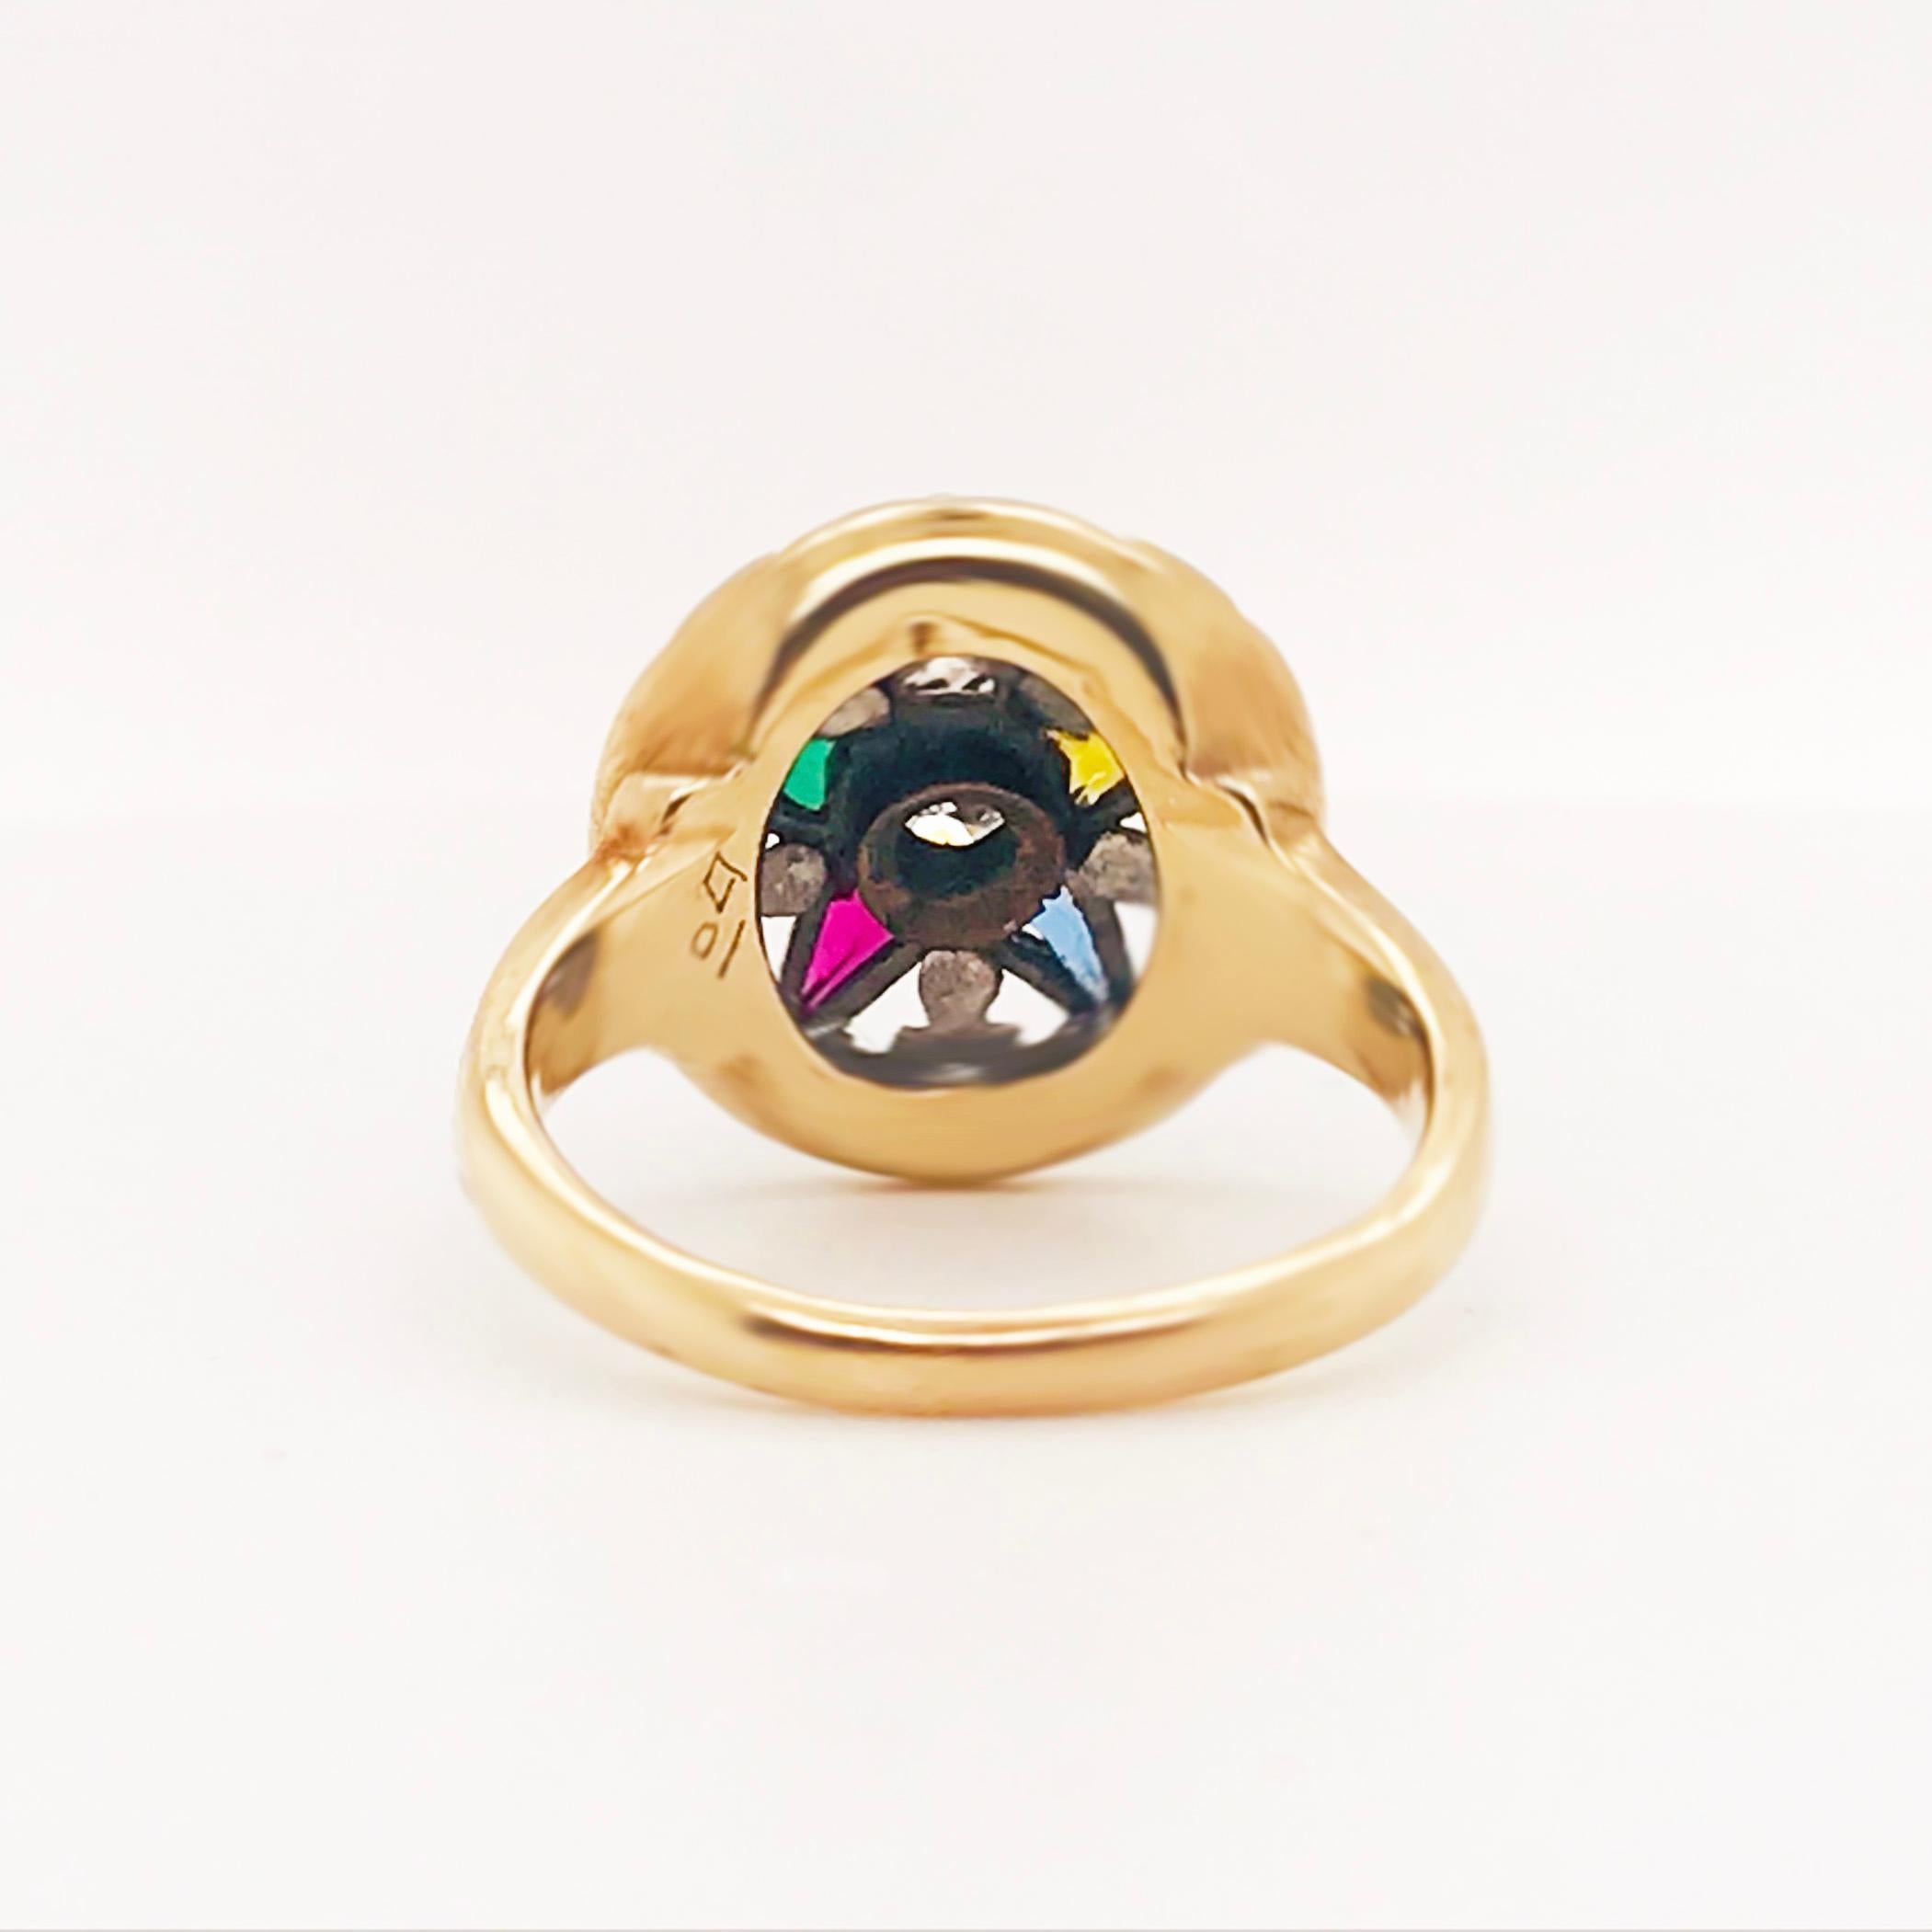 Artisan Eastern Star Diamond and Gemstone Estate Ring 14 Karat Gold Spiritual Star Ring